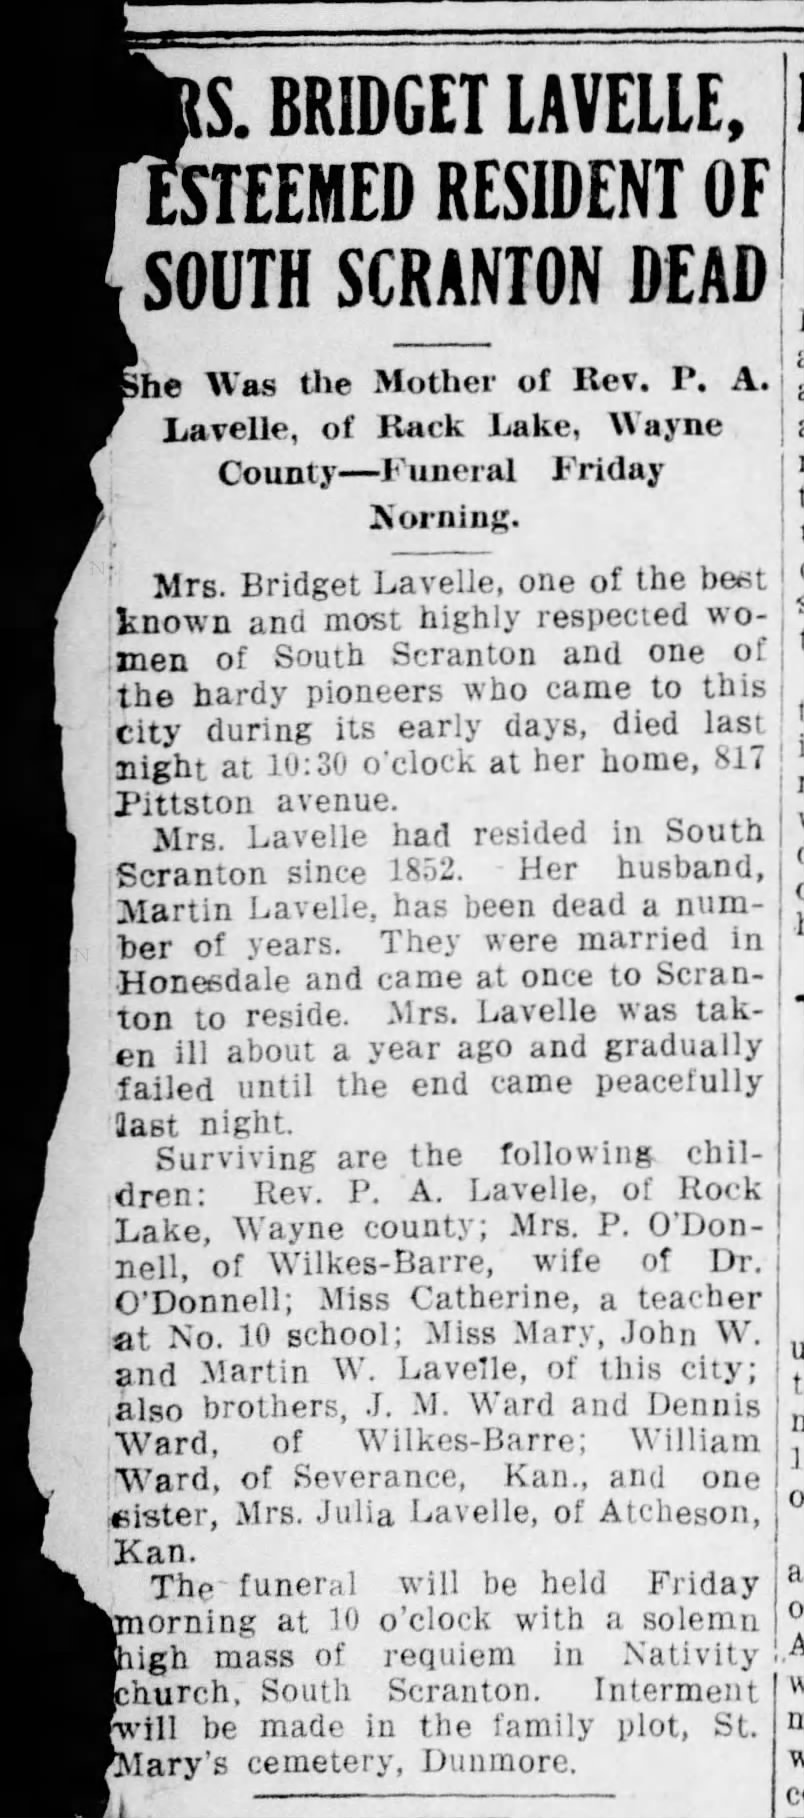 Other Bridget Lavelle obit 1911 names children